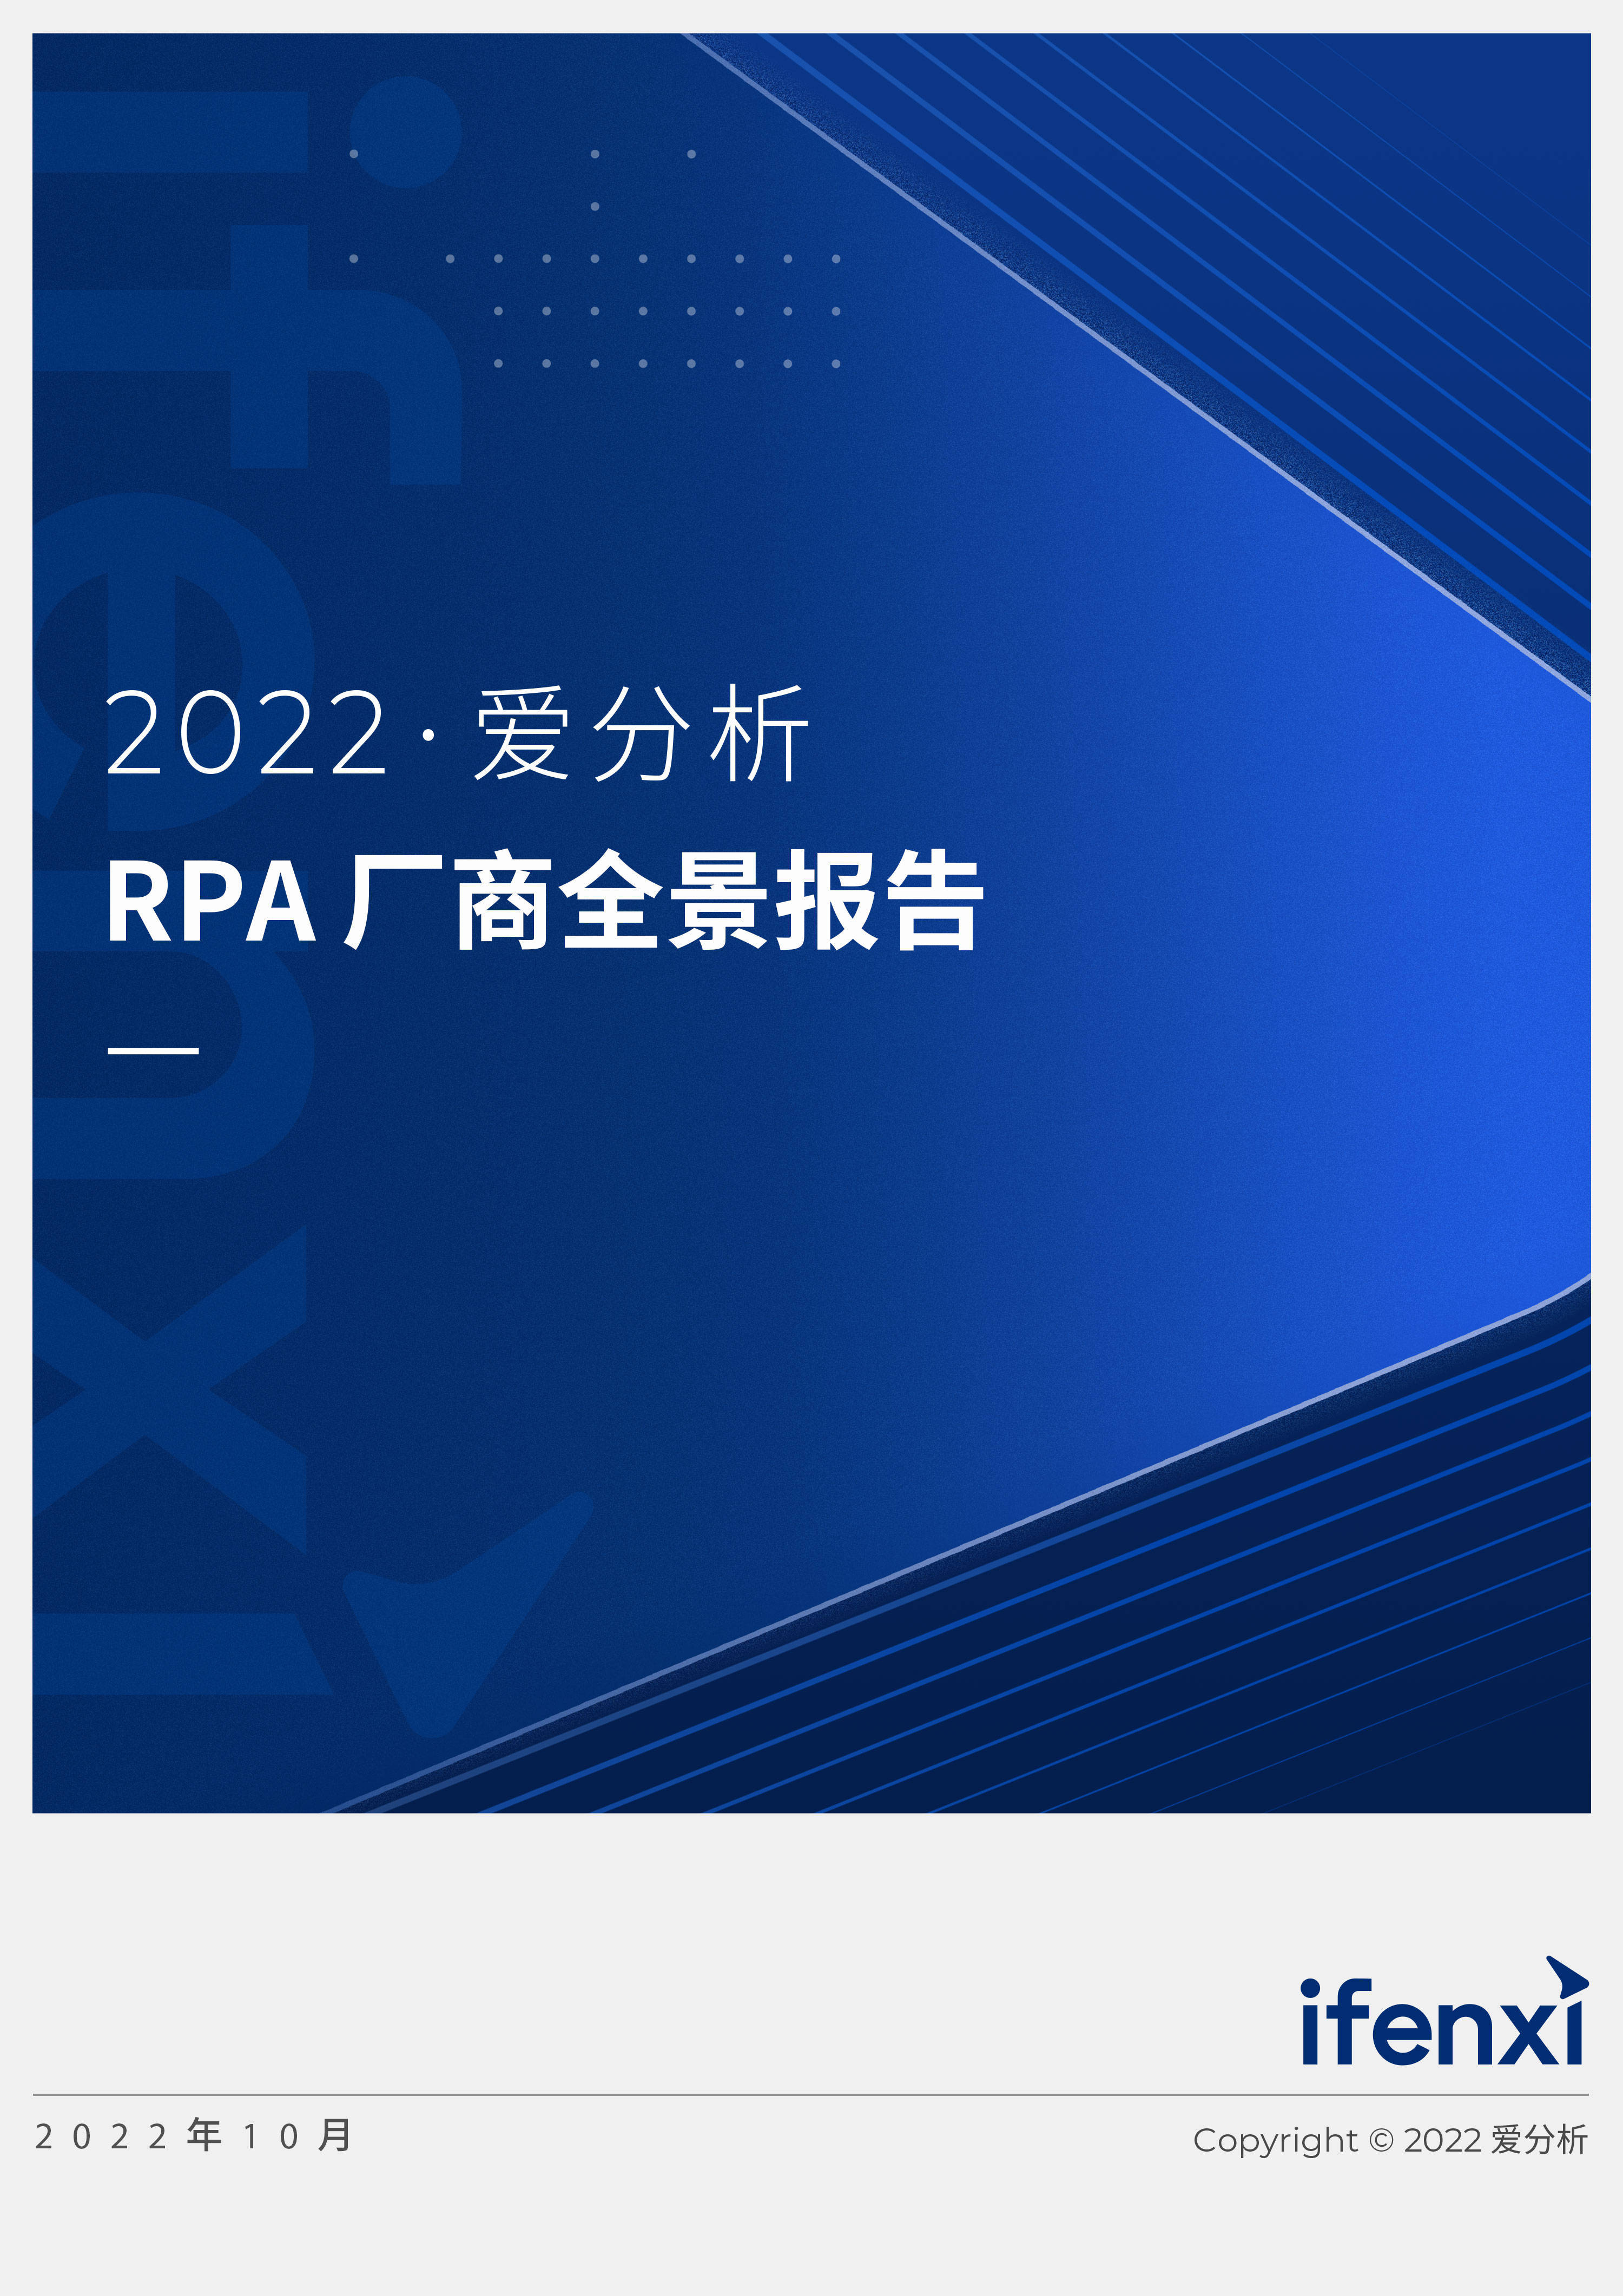 2022爱分析· RPA厂商全景报告